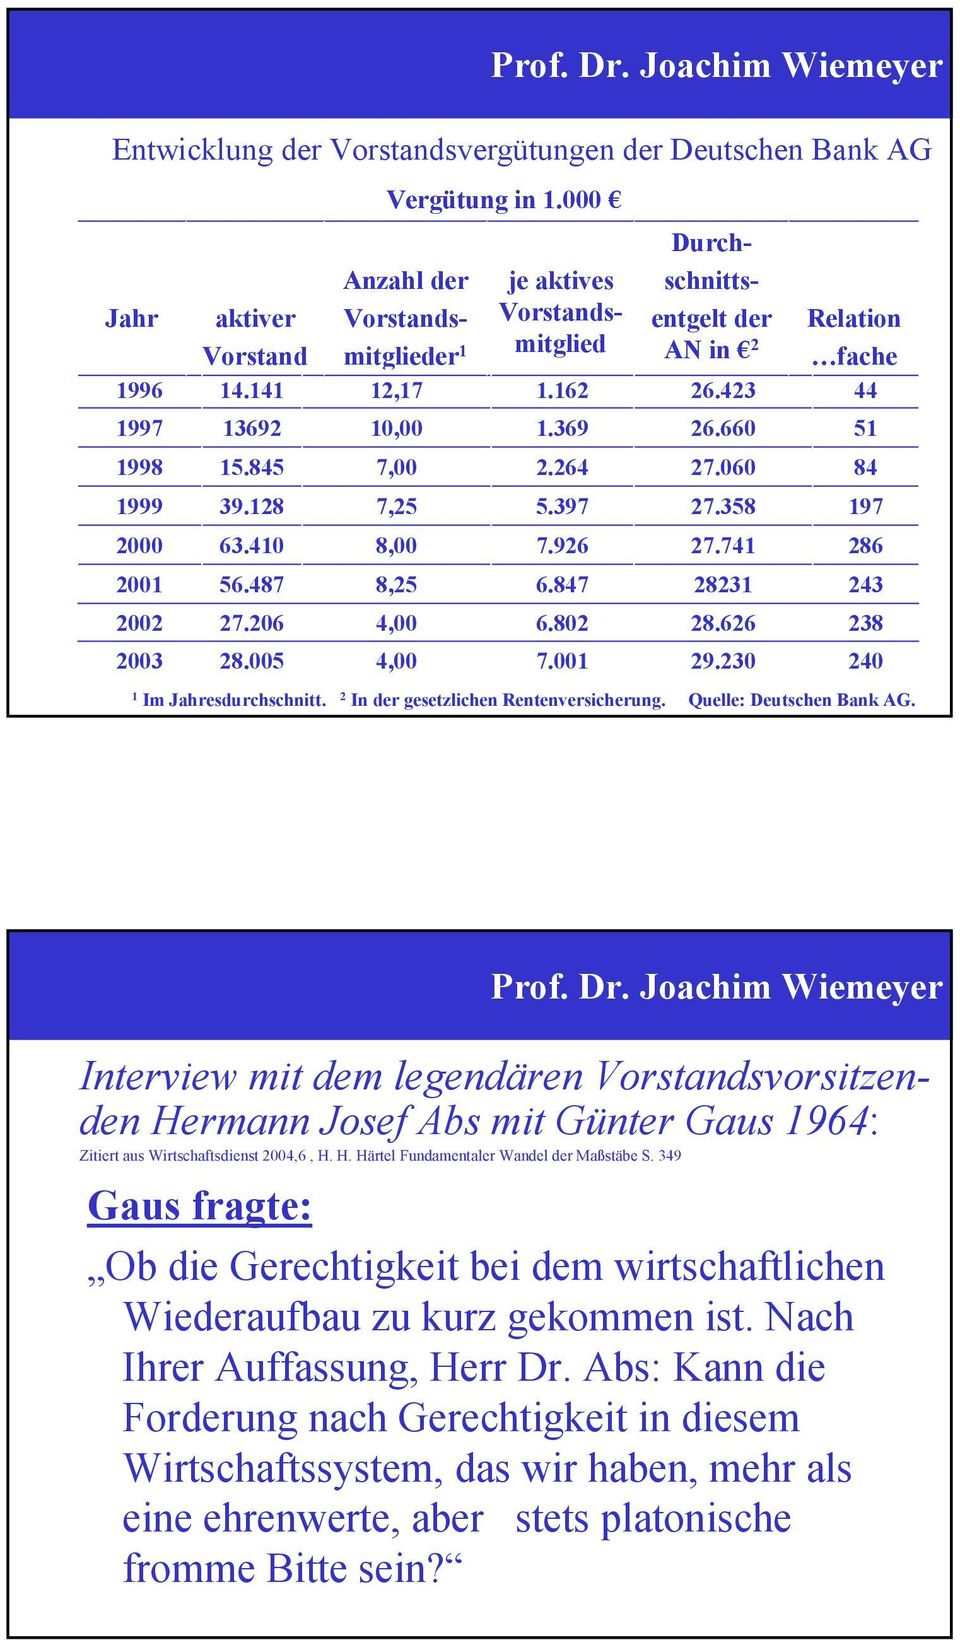 060 27.358 27.74 2823 28.626 29.230 Relation fache 44 Im Jahresdurchschnitt. 2 In der gesetzlichen Rentenversicherung. Quelle: Deutschen Bank AG.